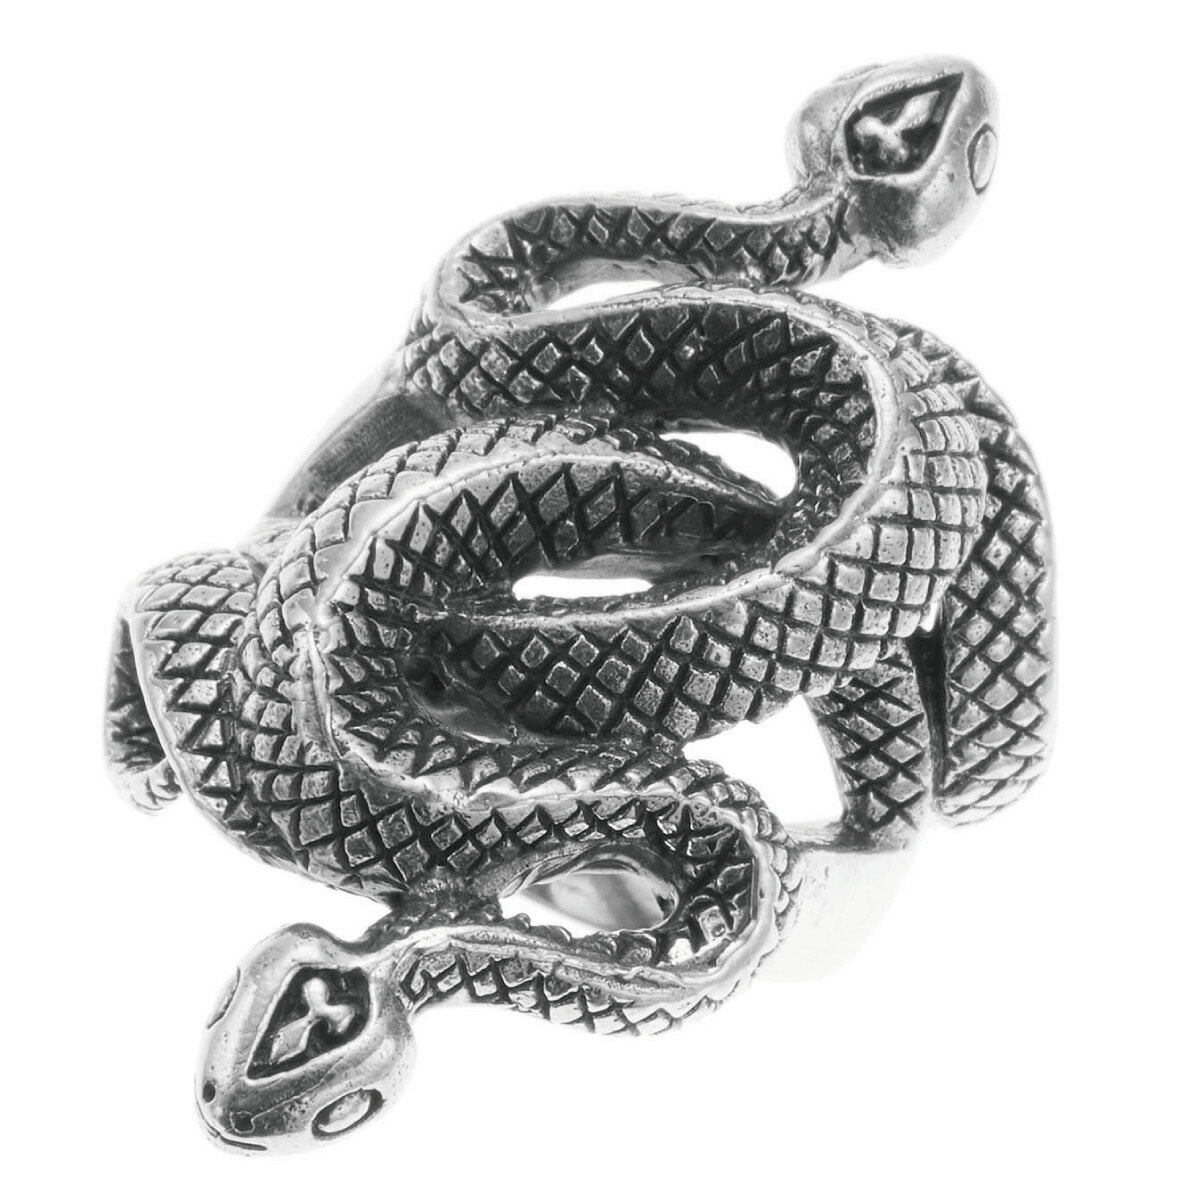 人気大割引 スネーク 蛇 ヘビ シルバー925 メンズ リング 大ぶり クール ワイド 幅広 ごつめ 指輪